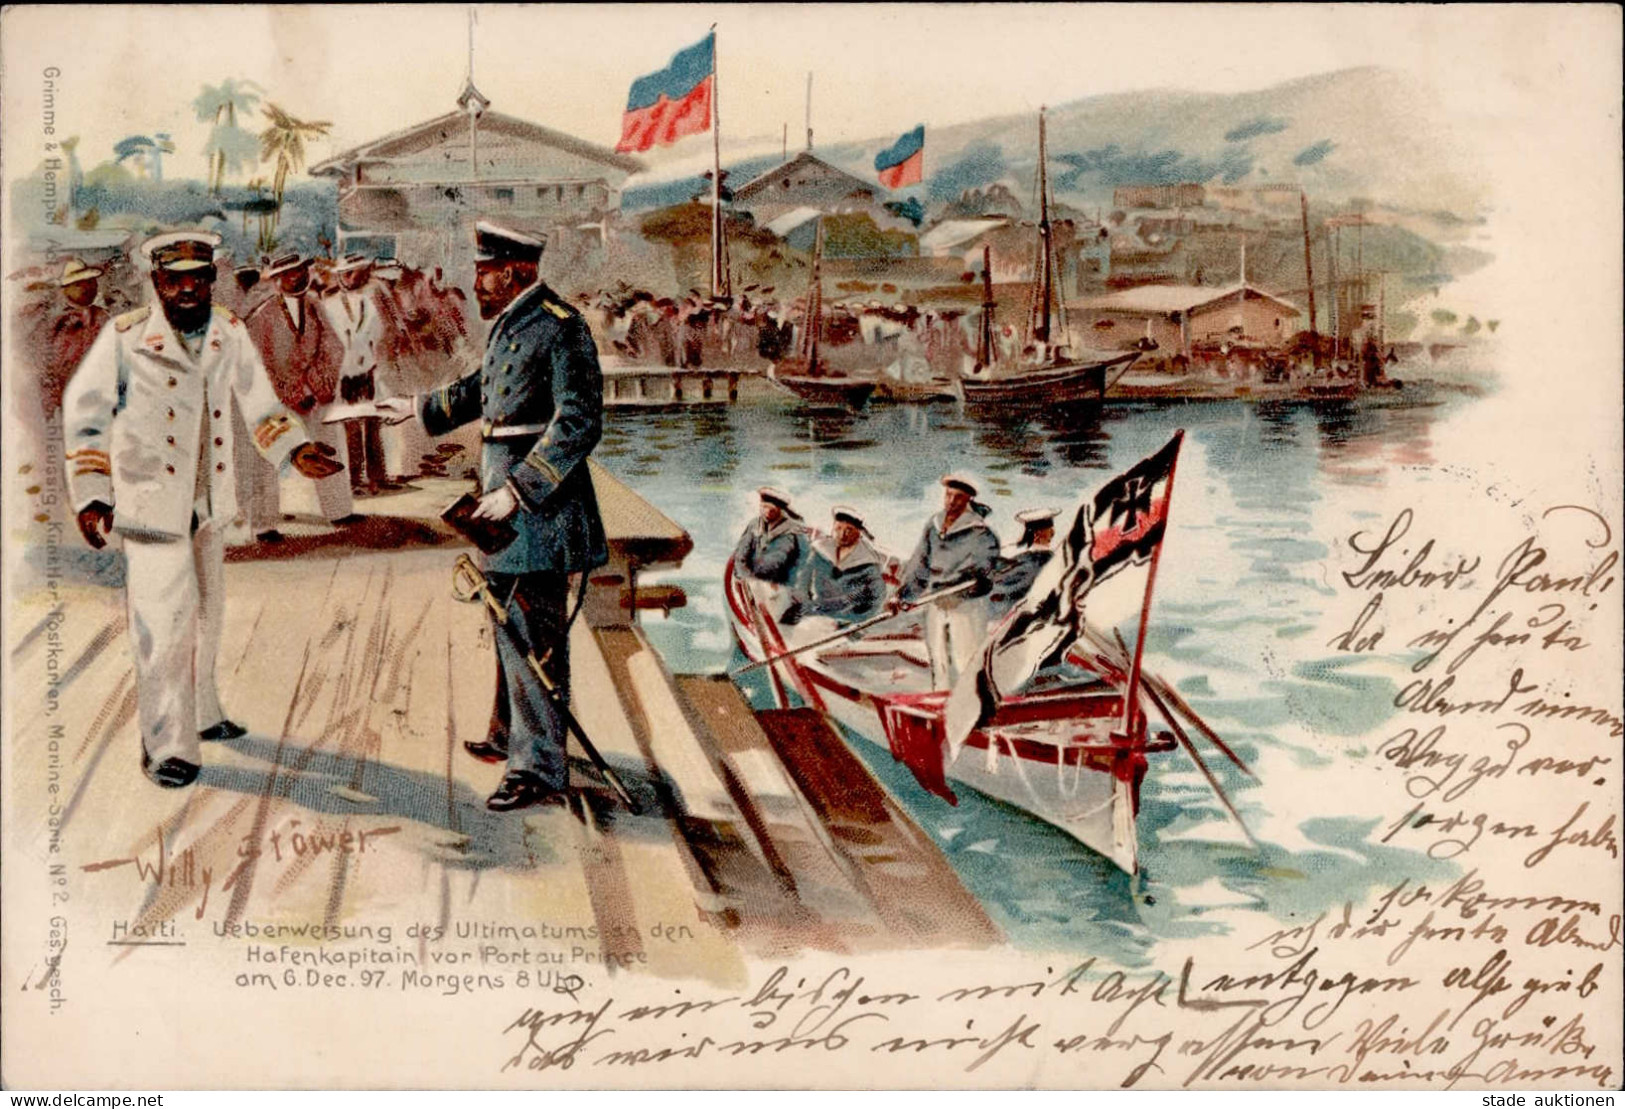 WILLY STÖWER - HAITI Überweisung Des Ultimatums An Den Hafenkapitän Vor PORT AU PRINCE Am 6.12.1897 I-II - Weltkrieg 1914-18